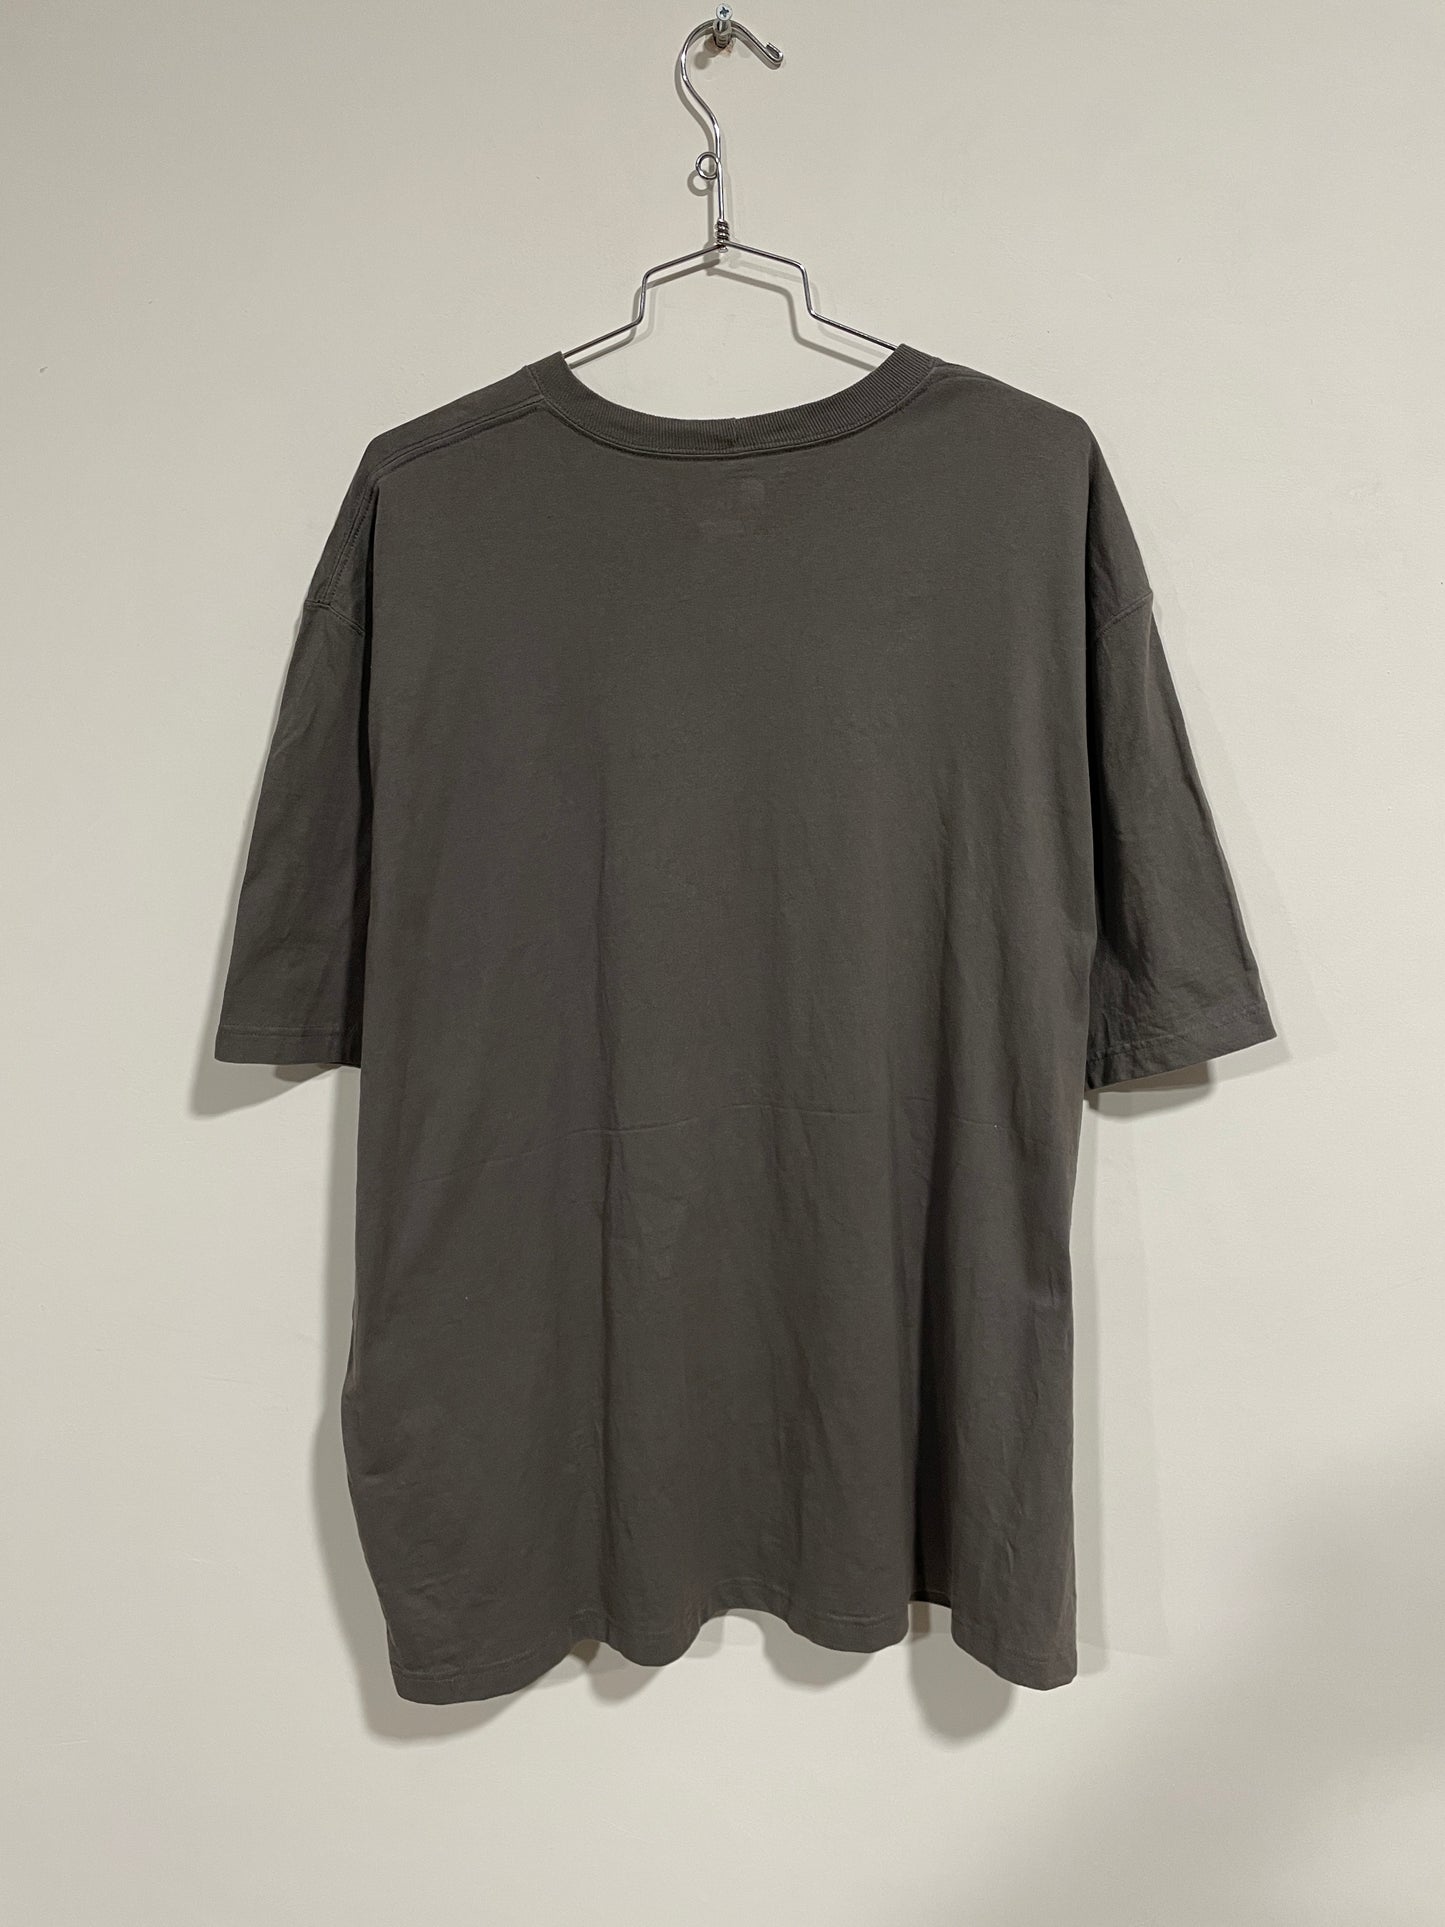 T shirt Carhartt USA (MR017)